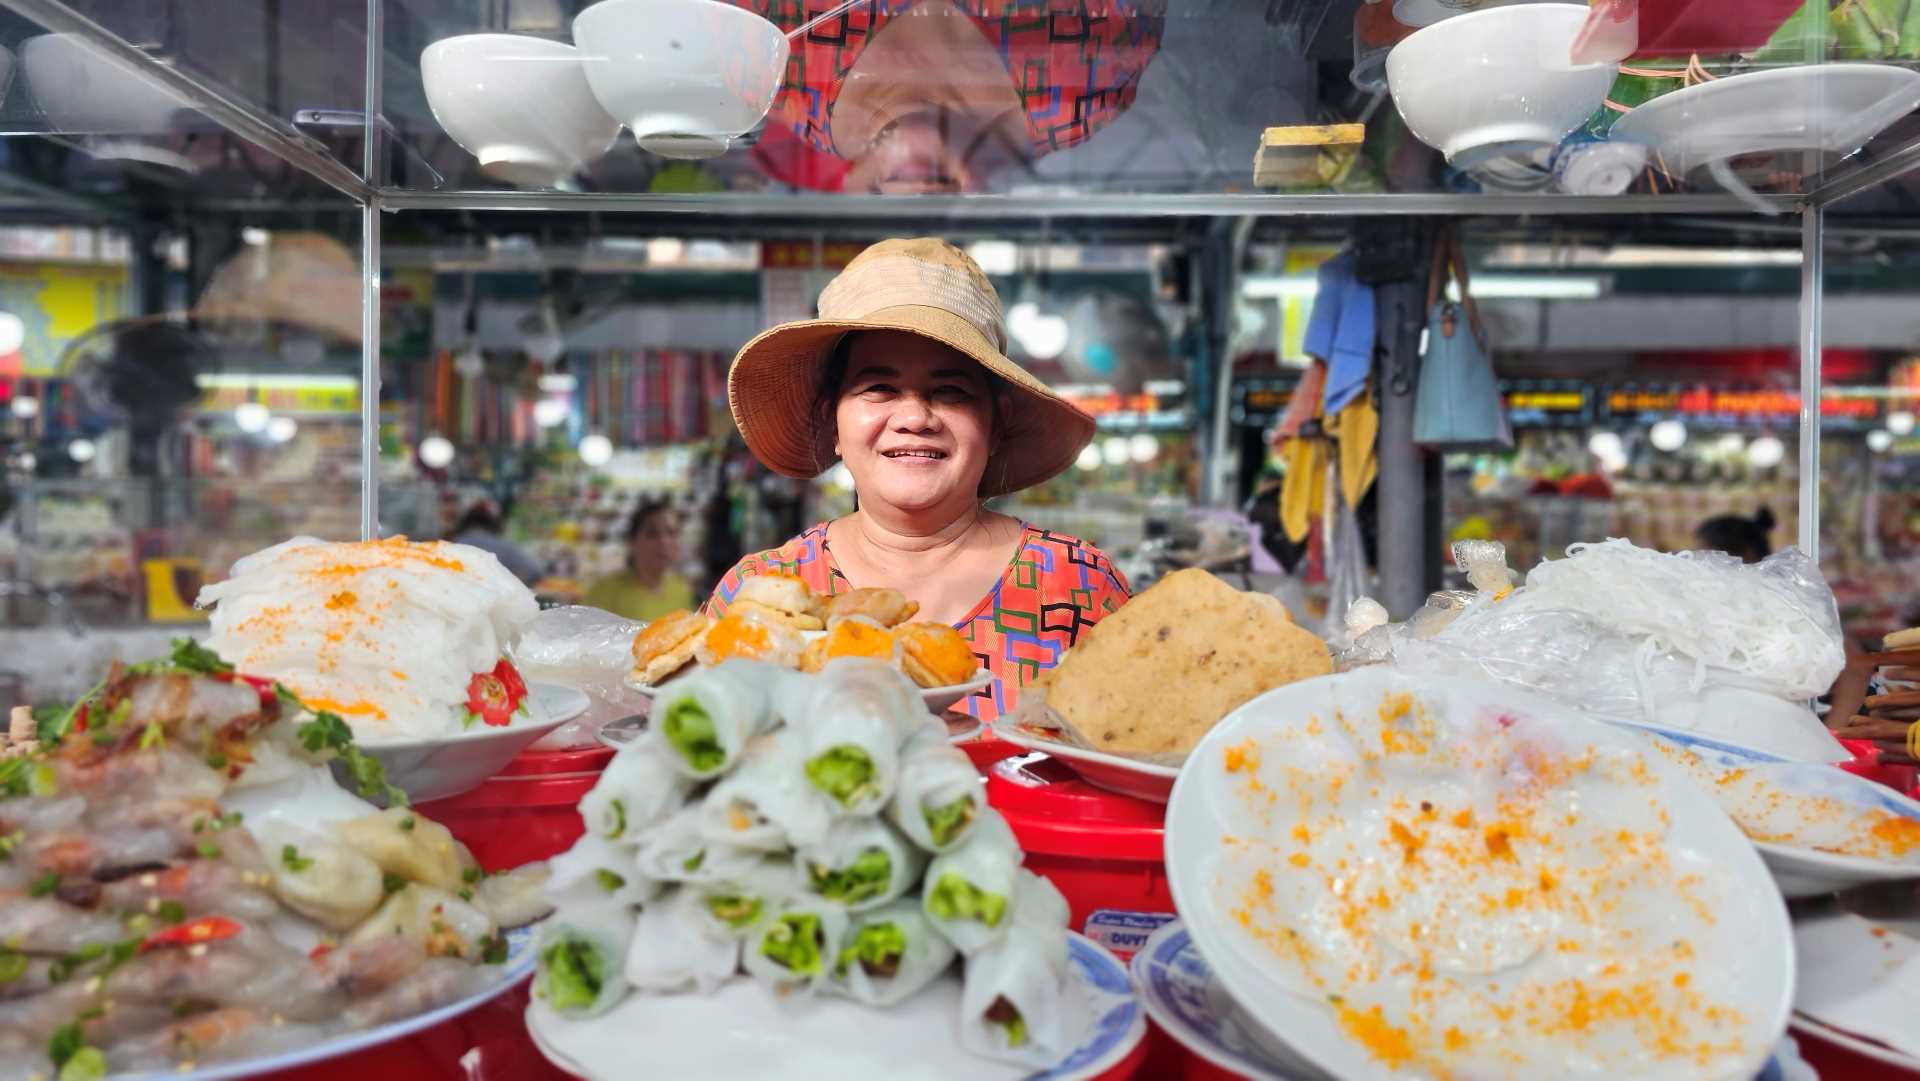 Những đặc sản của xứ Huế có thể kể đến như: mắm tôm chua, nem chả, hạt sen, bánh bột lọc…tất nhiên không thể thiếu đặc sản bún bò Huế, tất cả đều có ở khu chợ nổi tiếng này. 